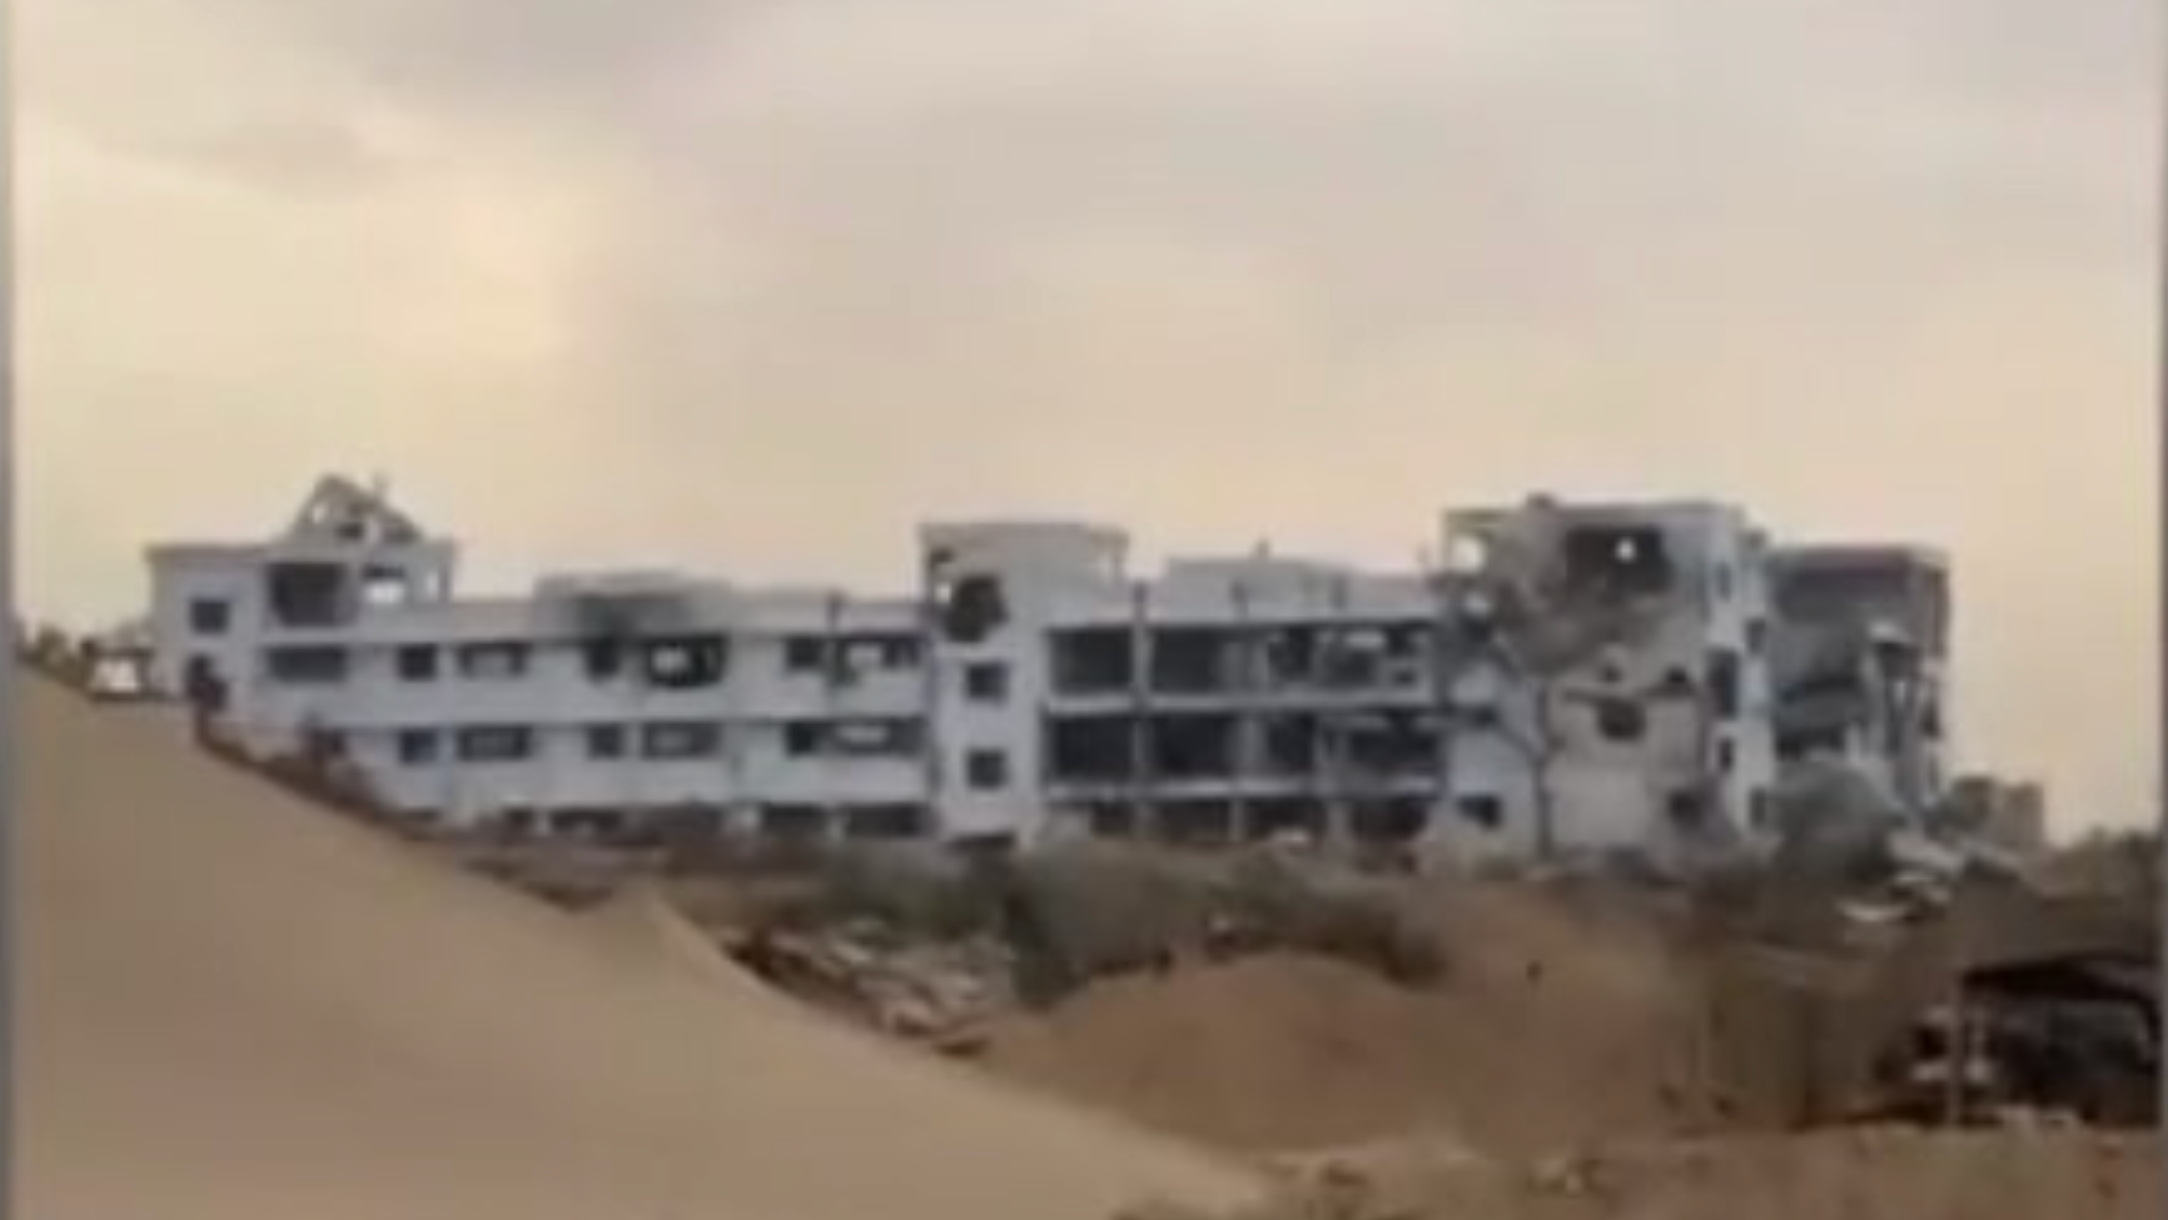 مبنى المجلس التشريعي الفلسطيني في غزة كما يظهر في الفيديو قبل لحظات من تفجيره